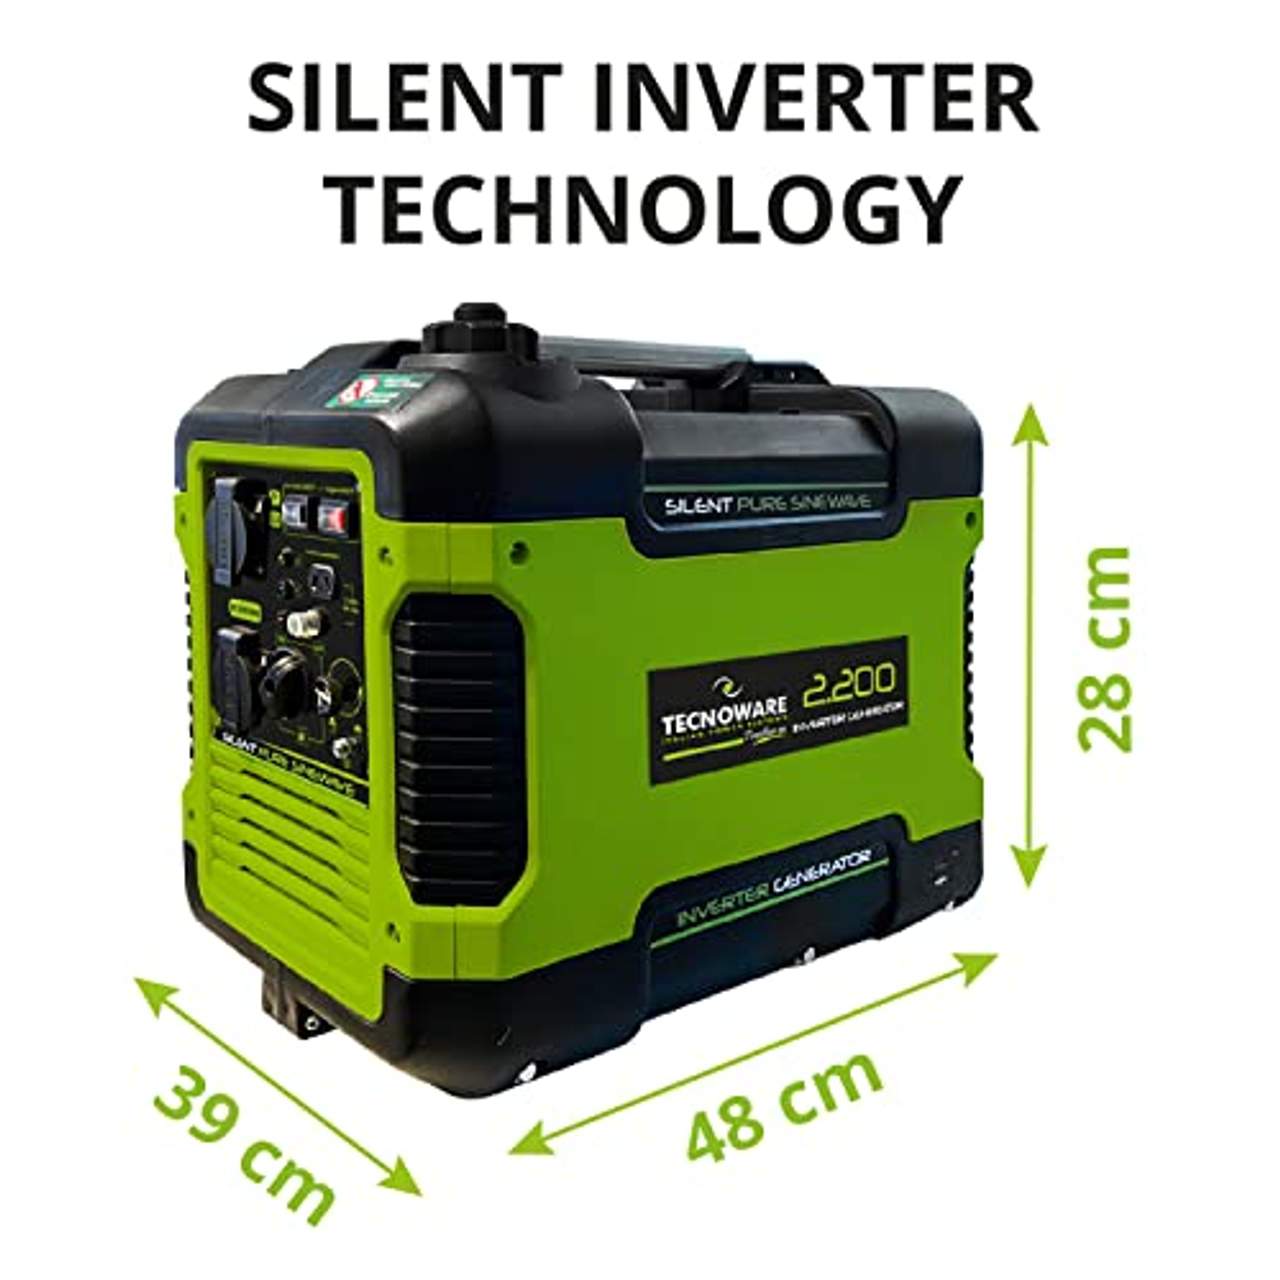 Tecnoware Invertergesteuerter schallgedämpfter Generator zu 2200 VA